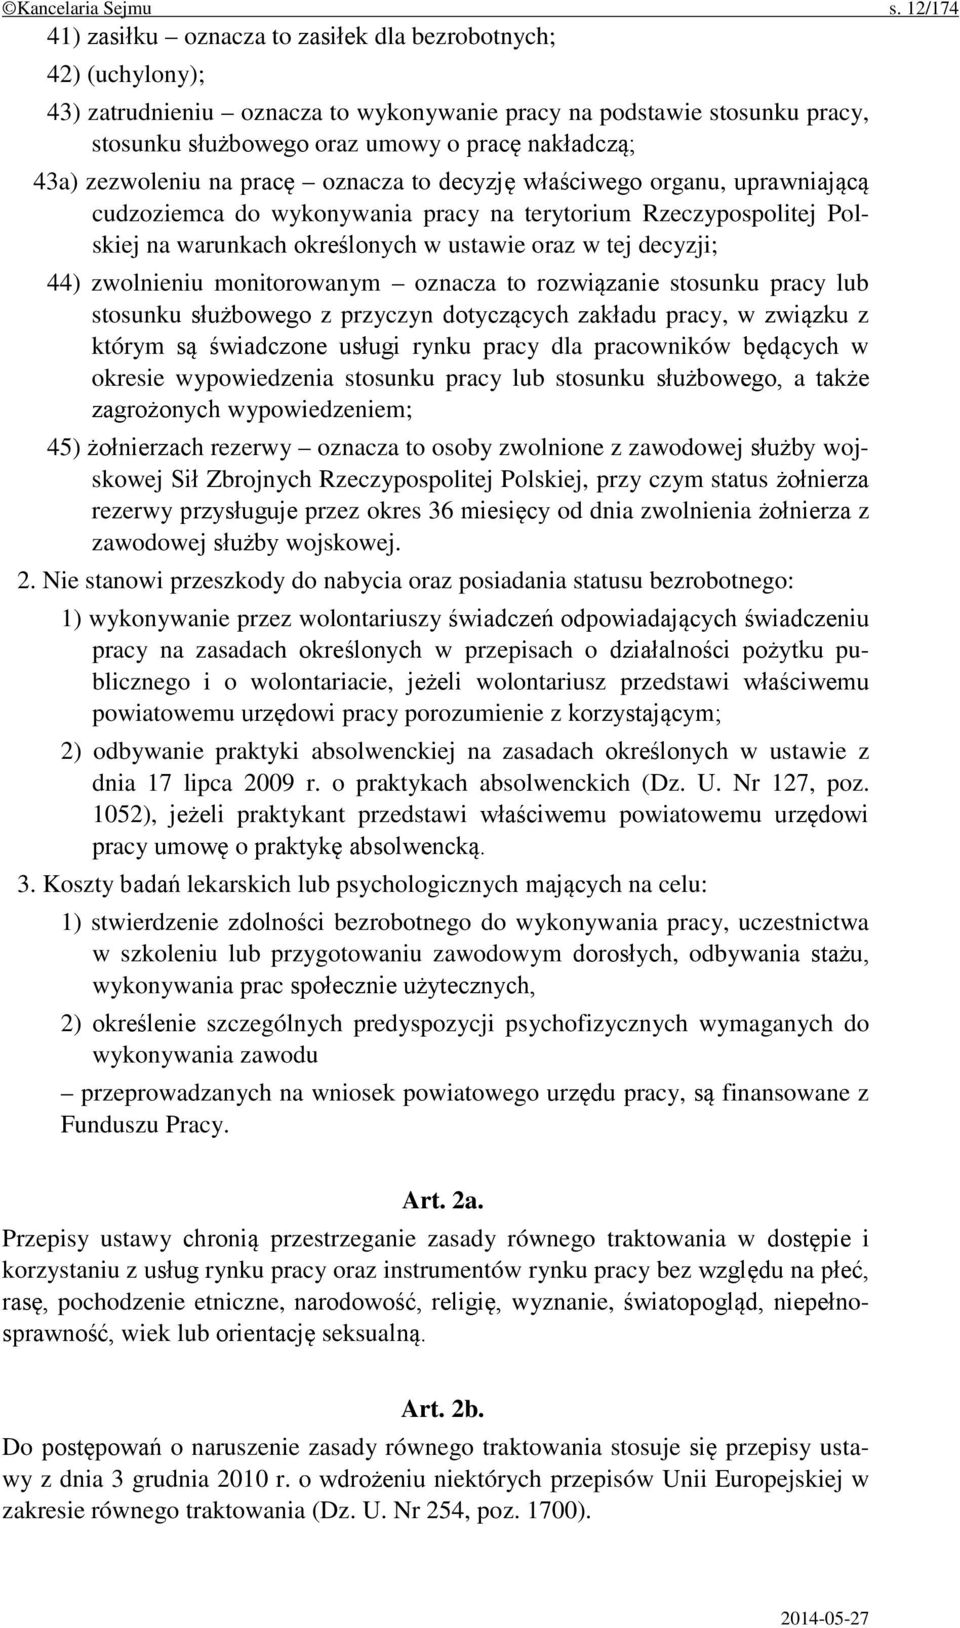 43a) zezwoleniu na pracę oznacza to decyzję właściwego organu, uprawniającą cudzoziemca do wykonywania pracy na terytorium Rzeczypospolitej Polskiej na warunkach określonych w ustawie oraz w tej